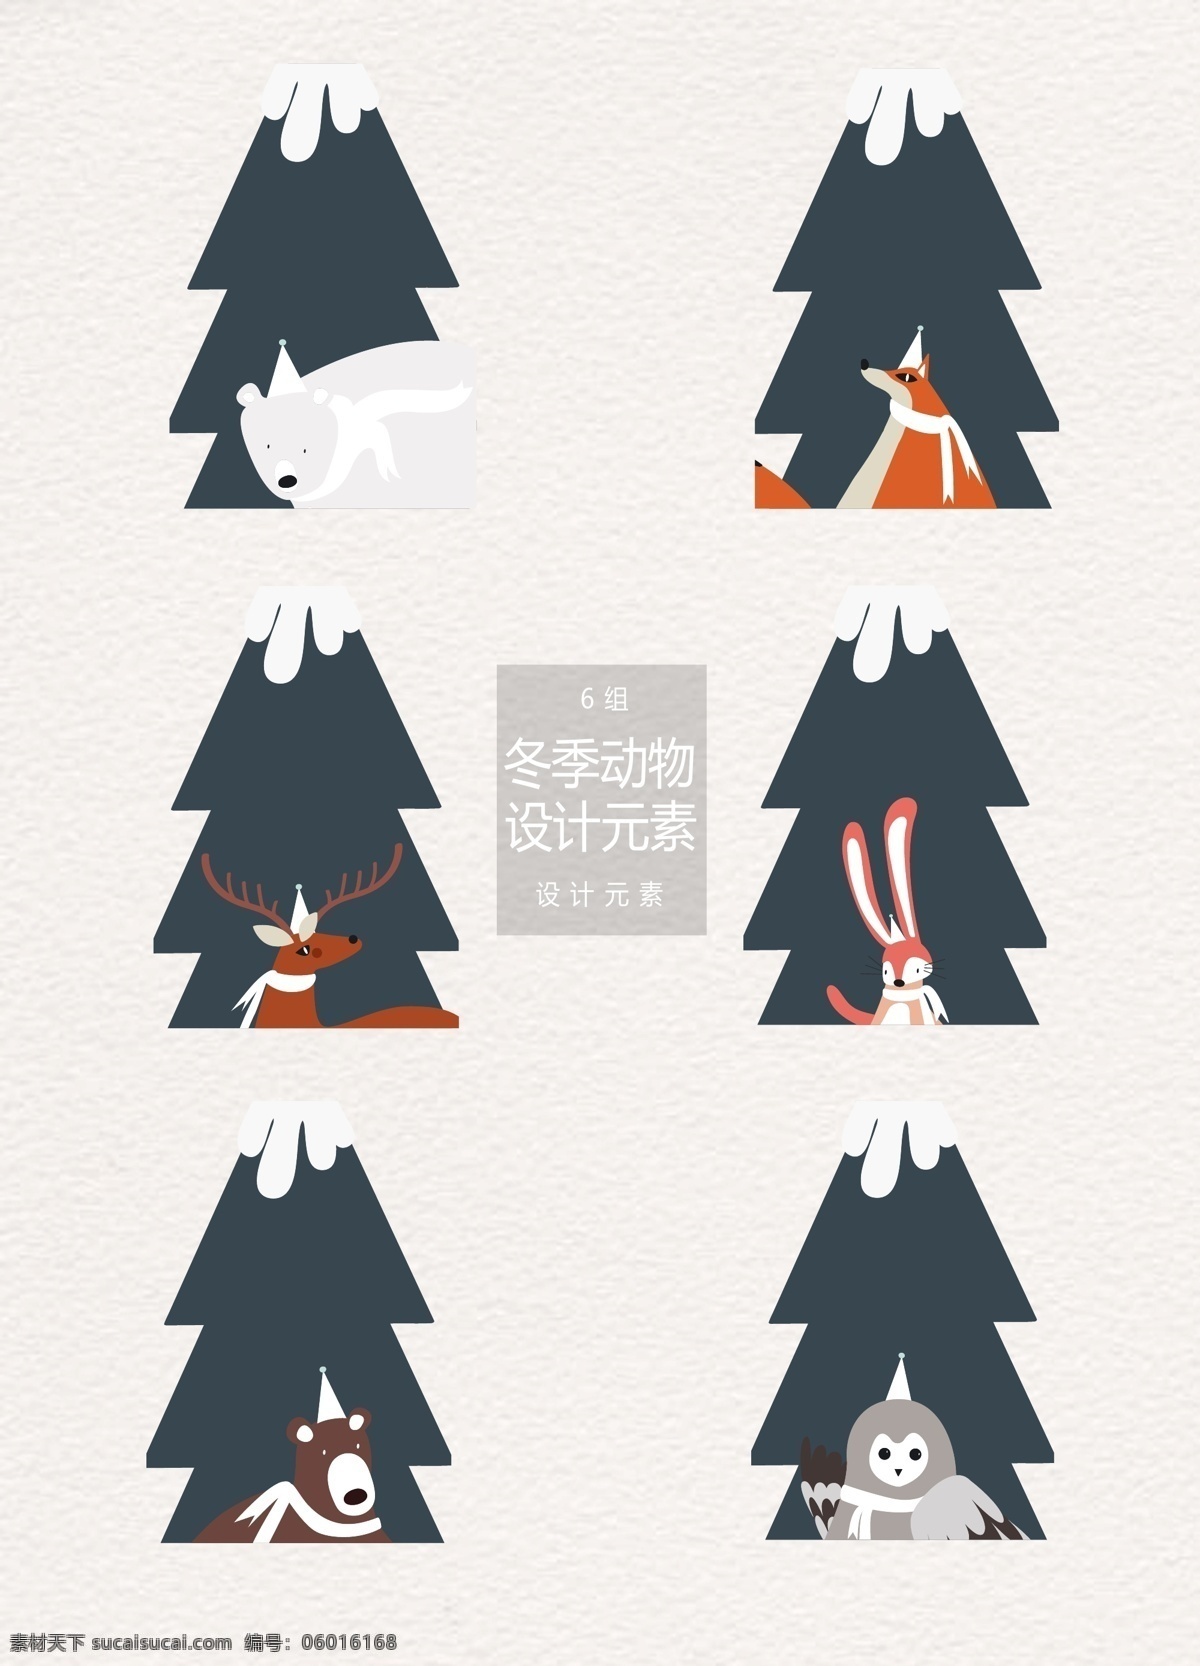 冬季 森林 动物 插画 元素 圣诞树 兔子 森林动物 动物插画 圣诞 北极熊 狐狸 麋鹿 狗熊 猫头鹰